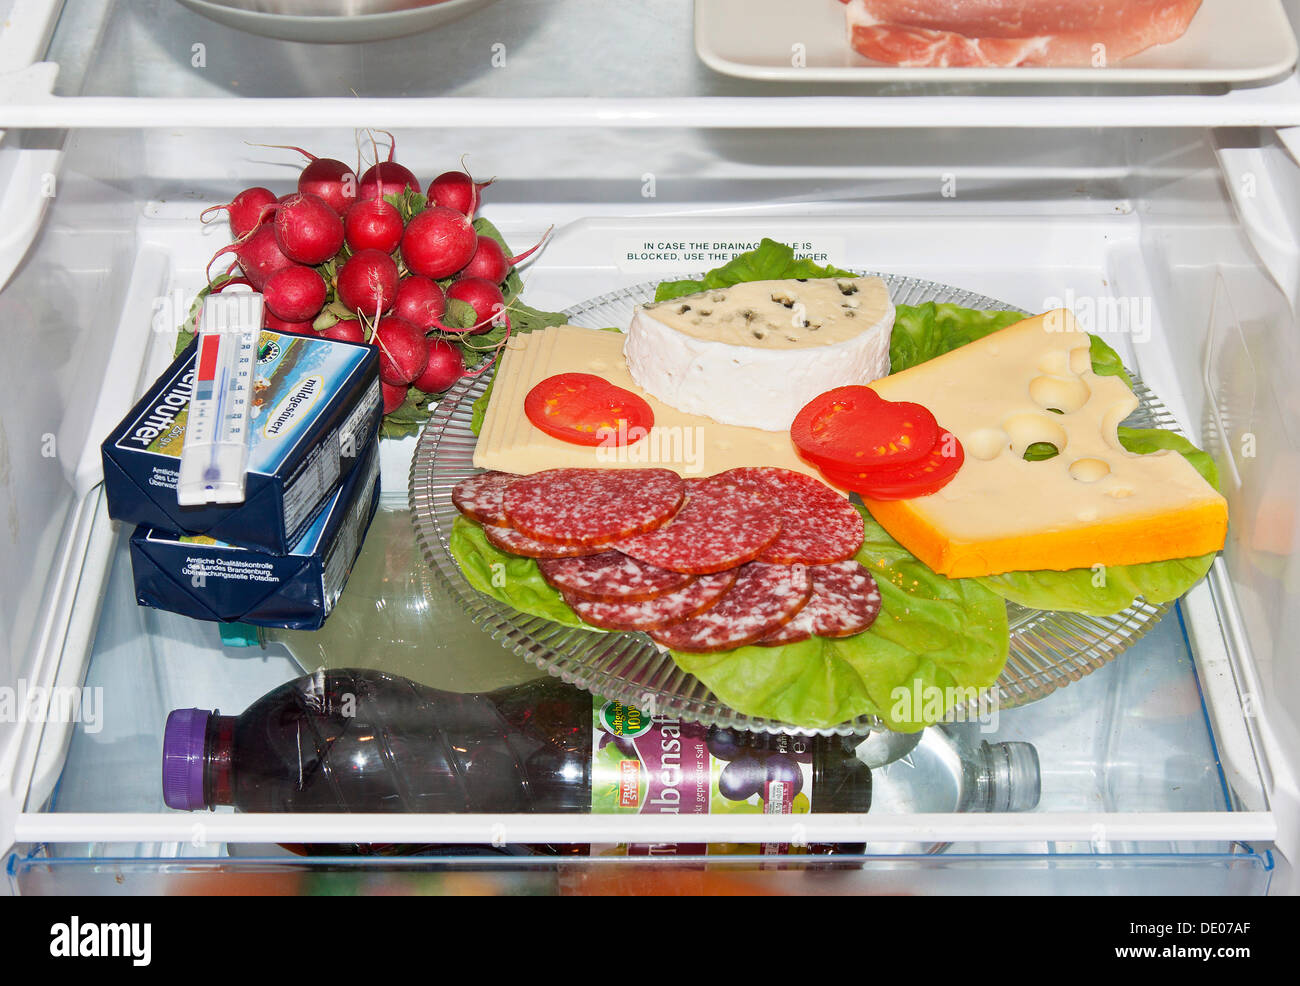 Mauvais stockage des aliments dans un réfrigérateur, à découvert un plateau de fromages, saucisses platter Banque D'Images